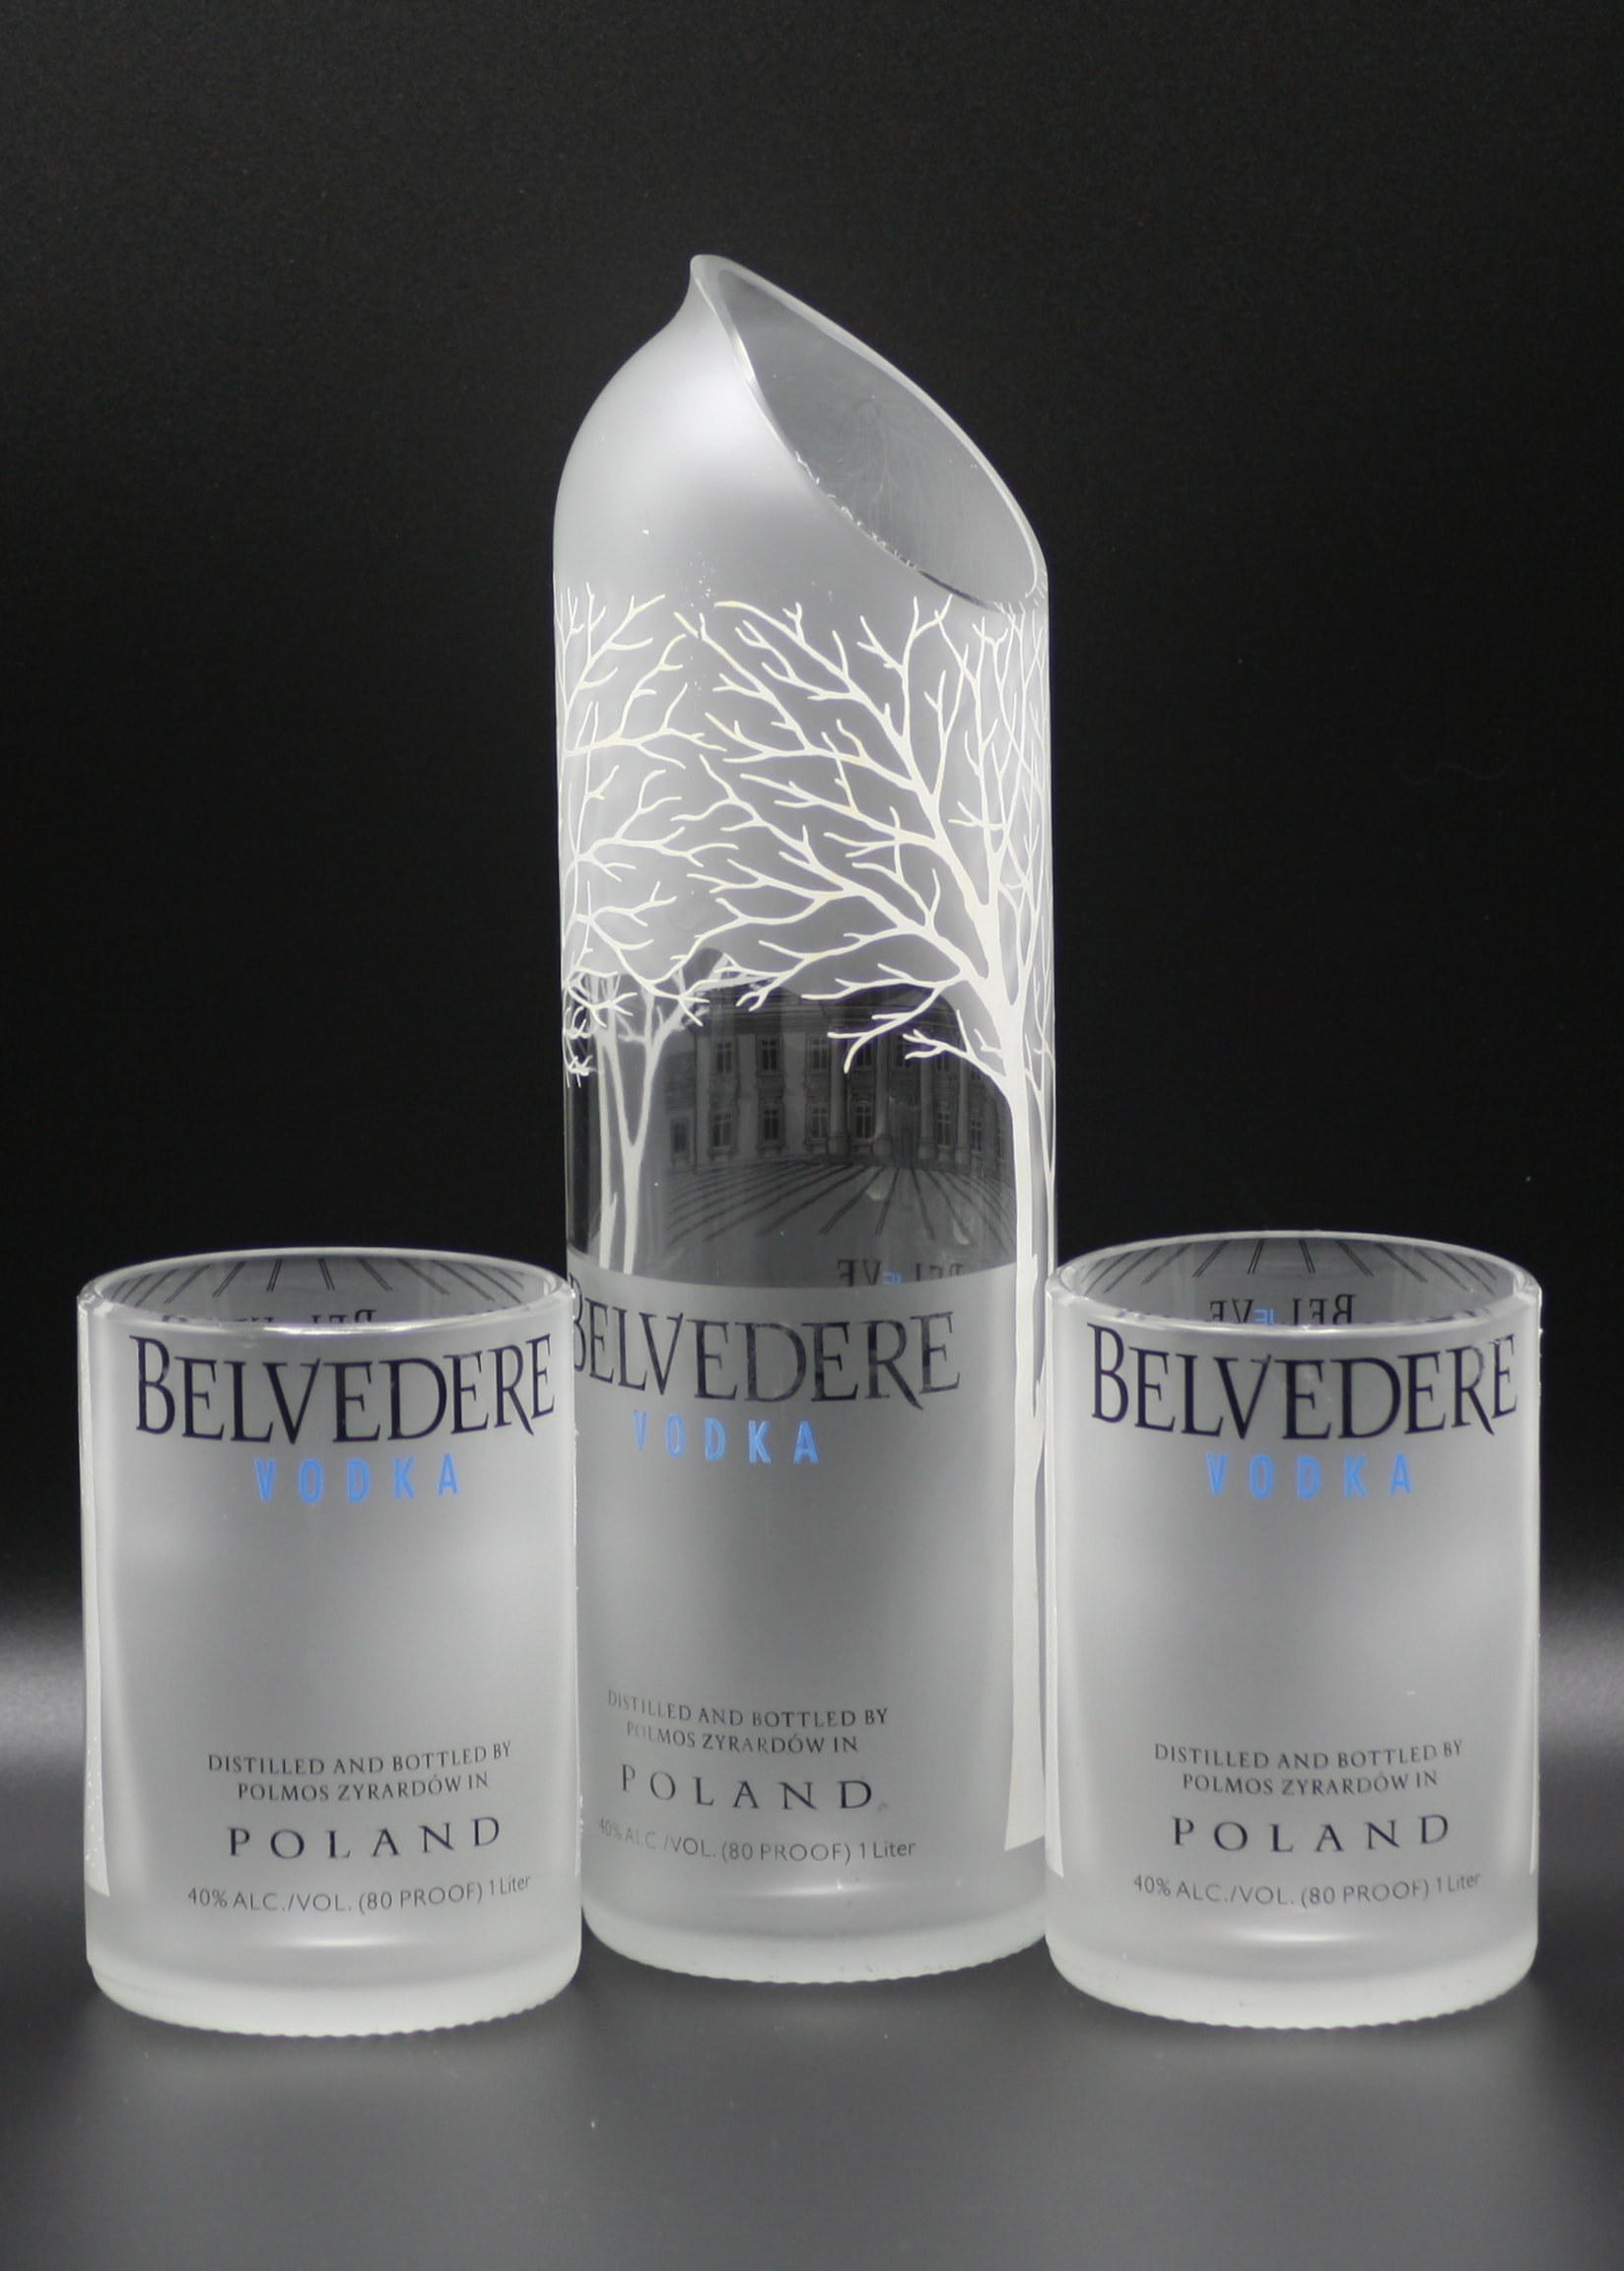 Belvedere Vodka Set 1,75l Flasche + 2 Gläser + Brille +